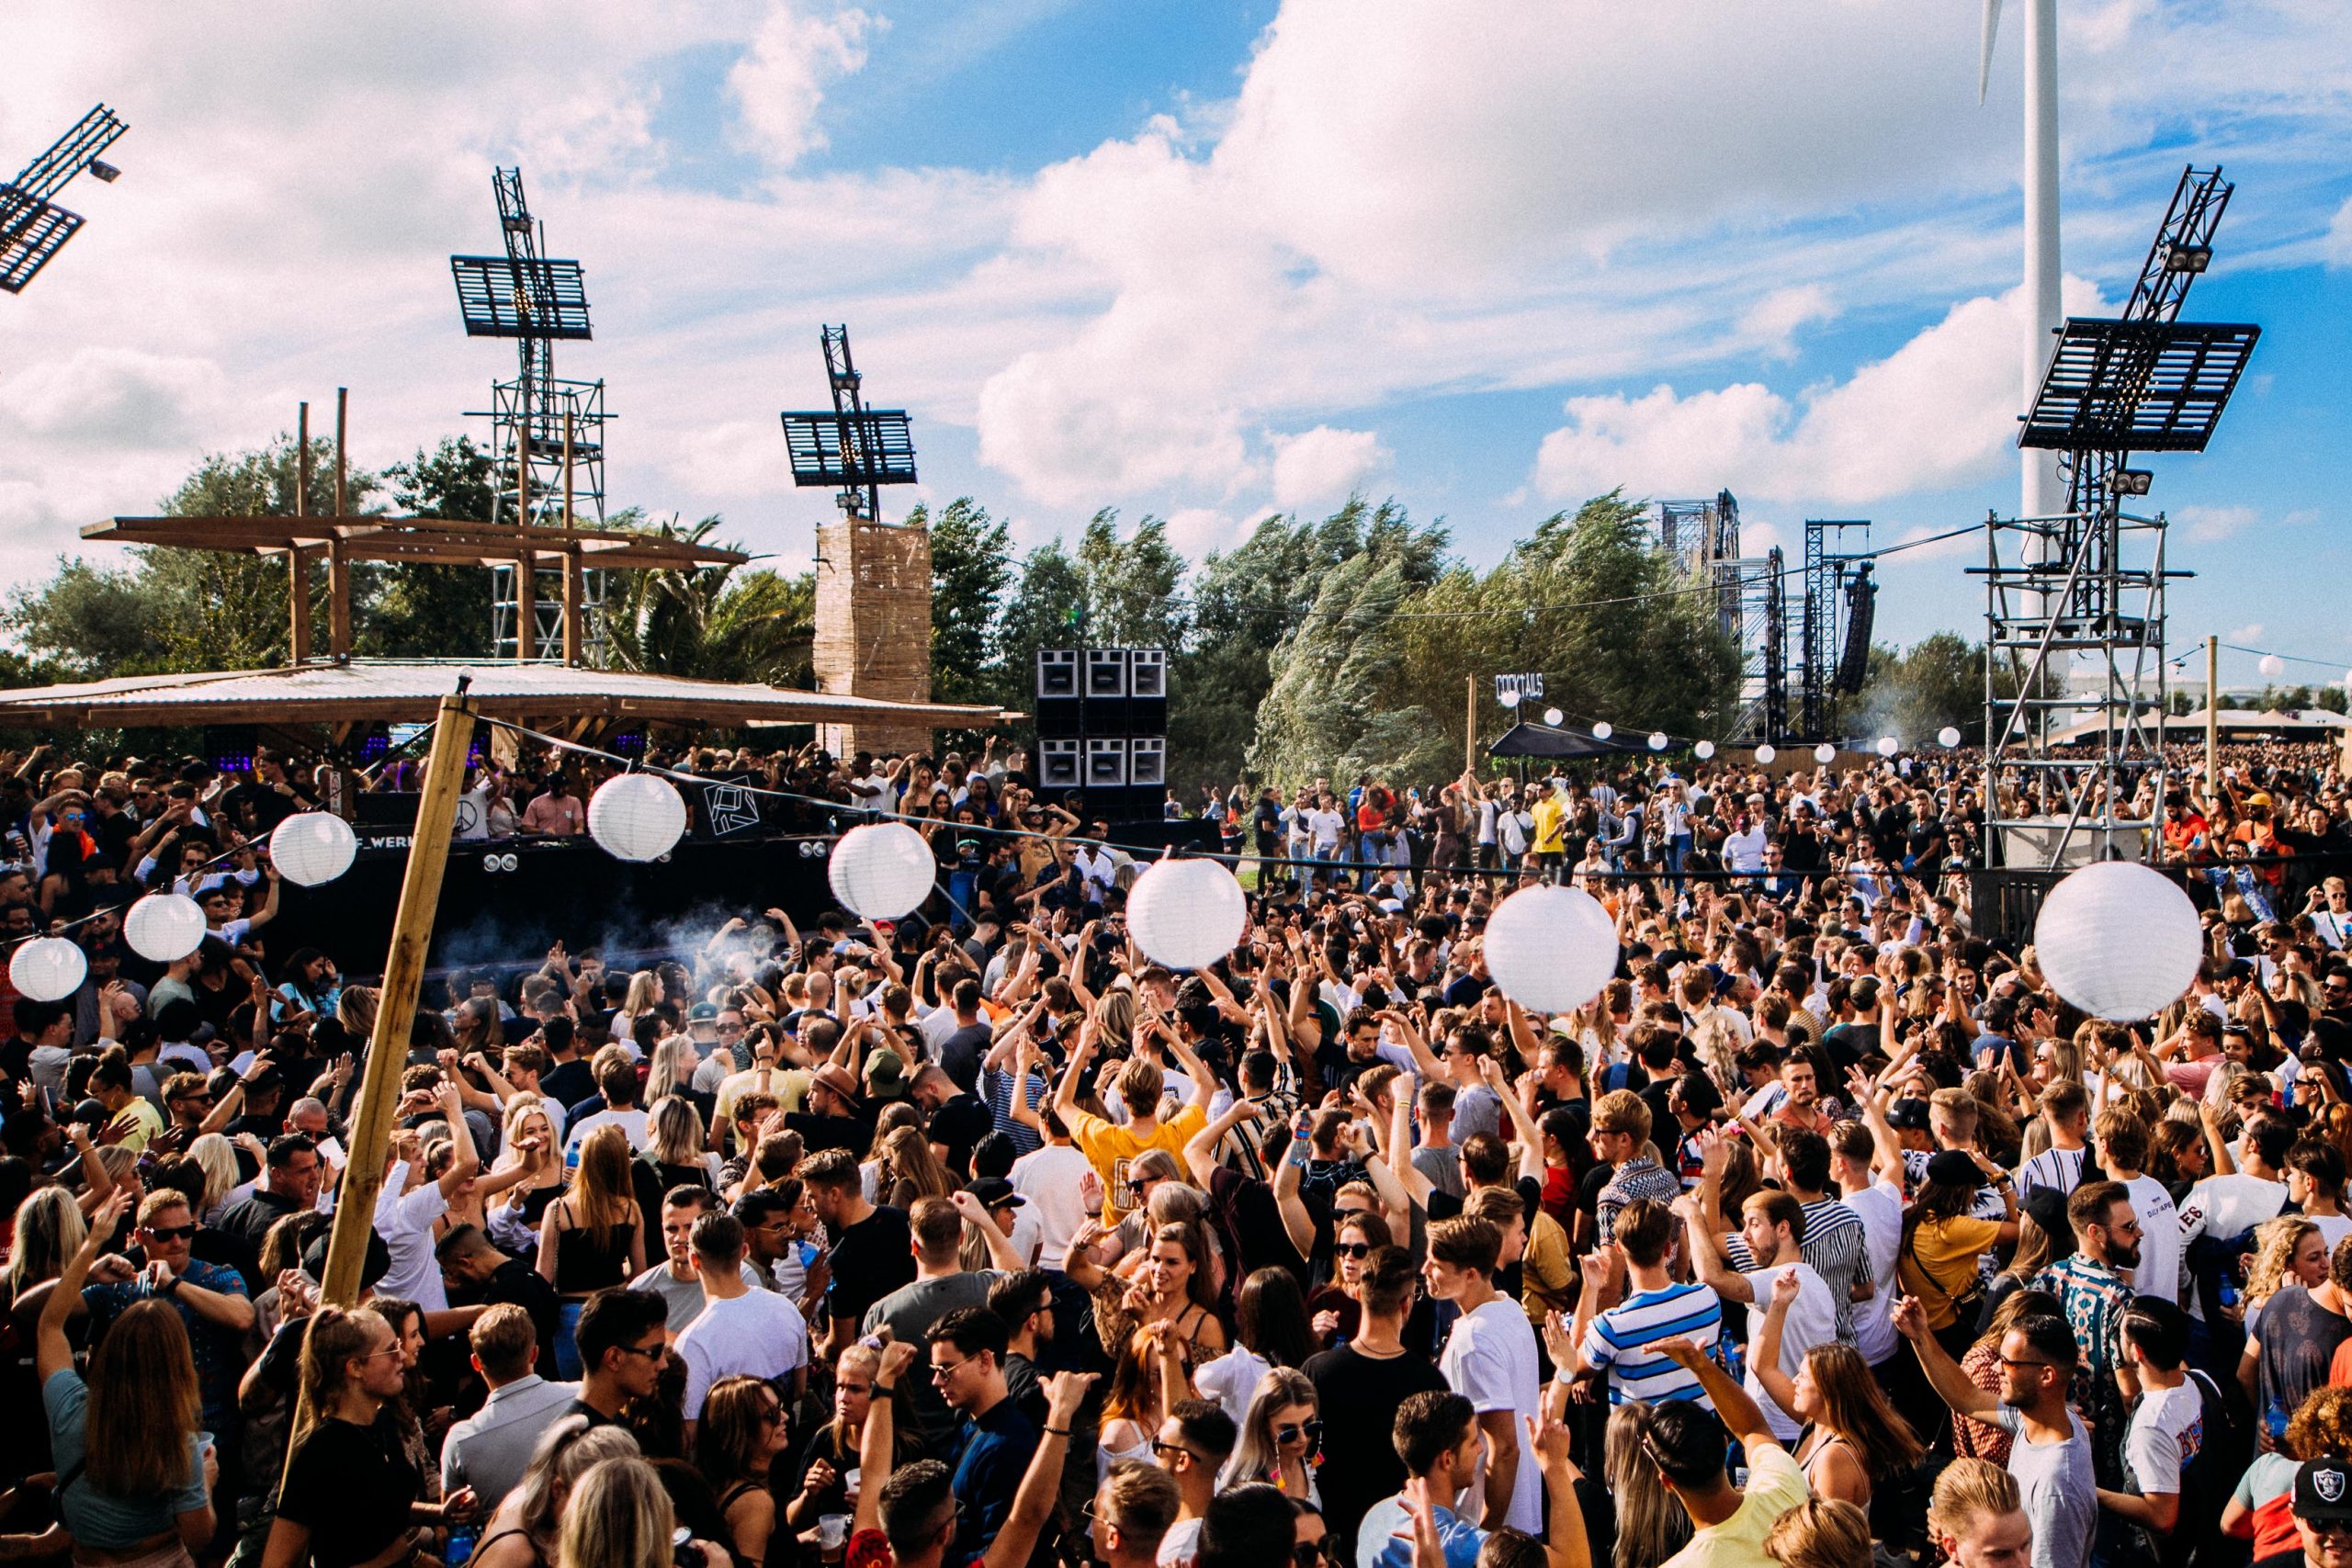 Amsterdam best festivals of 2022